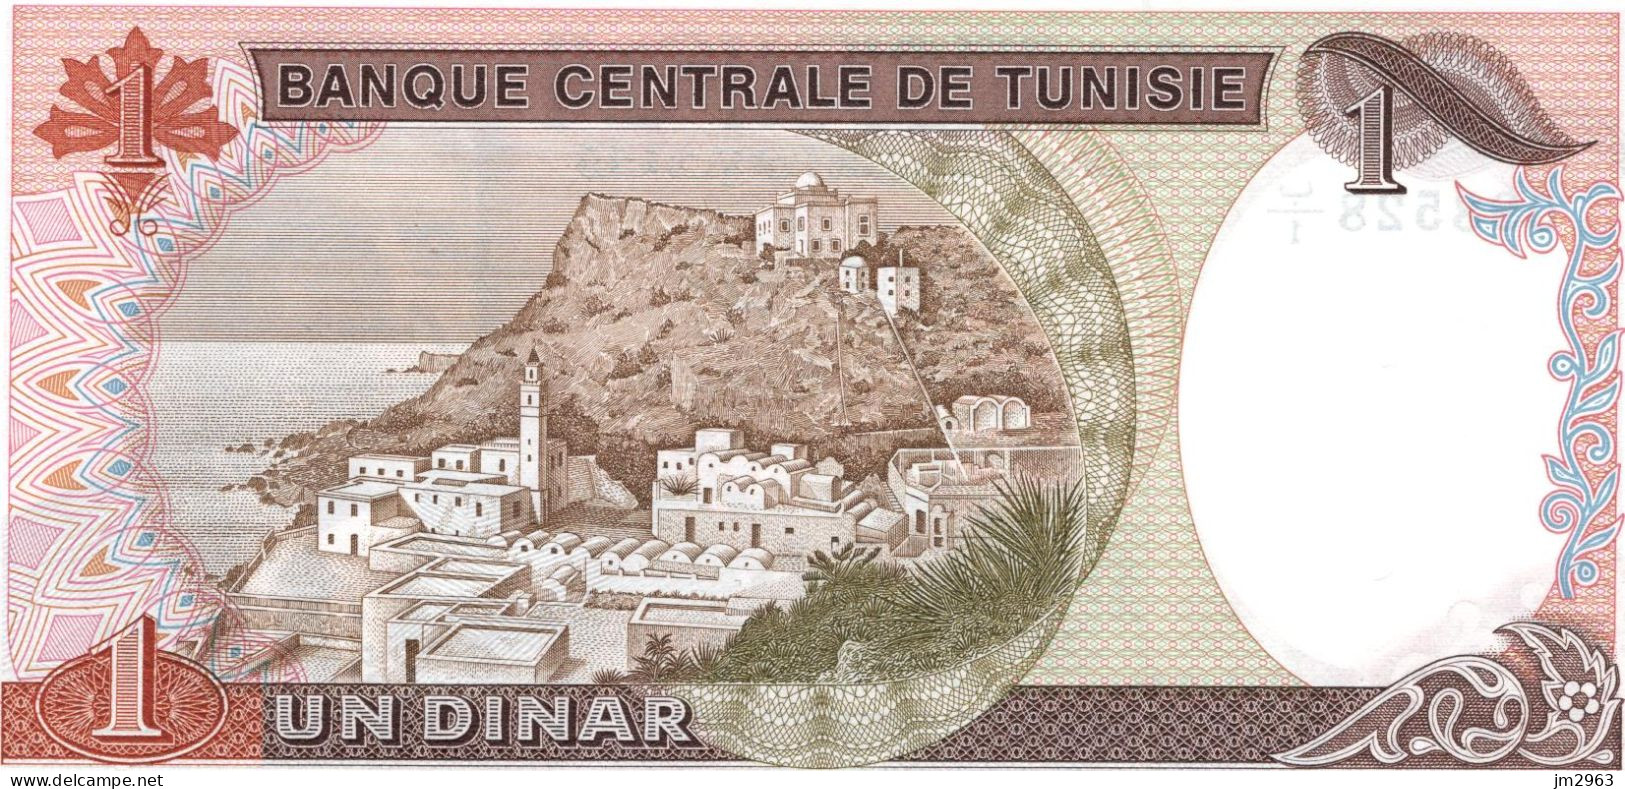 TUNISIE 1 DINAR 15.10.1980 UNC  B1/098528 - Tunisie